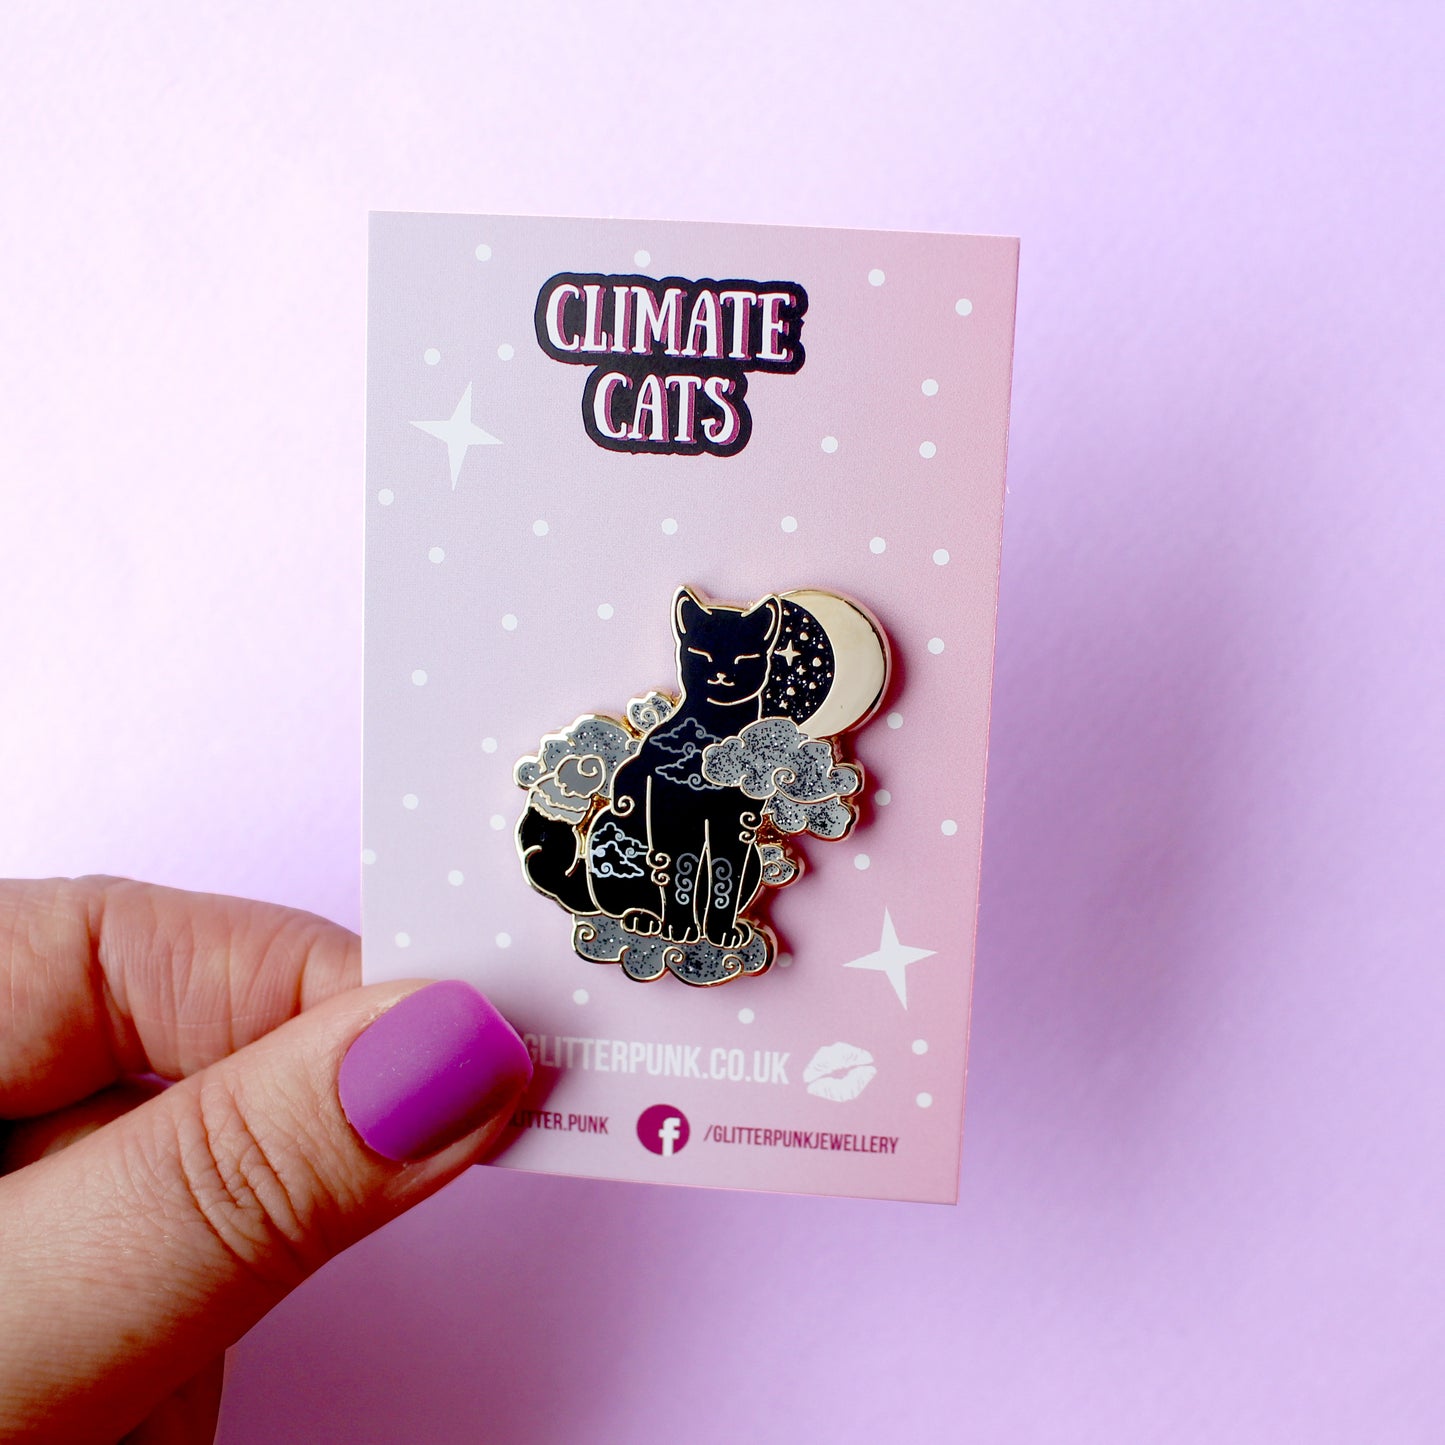 Cloud Cat Enamel Pin - Climate Cats